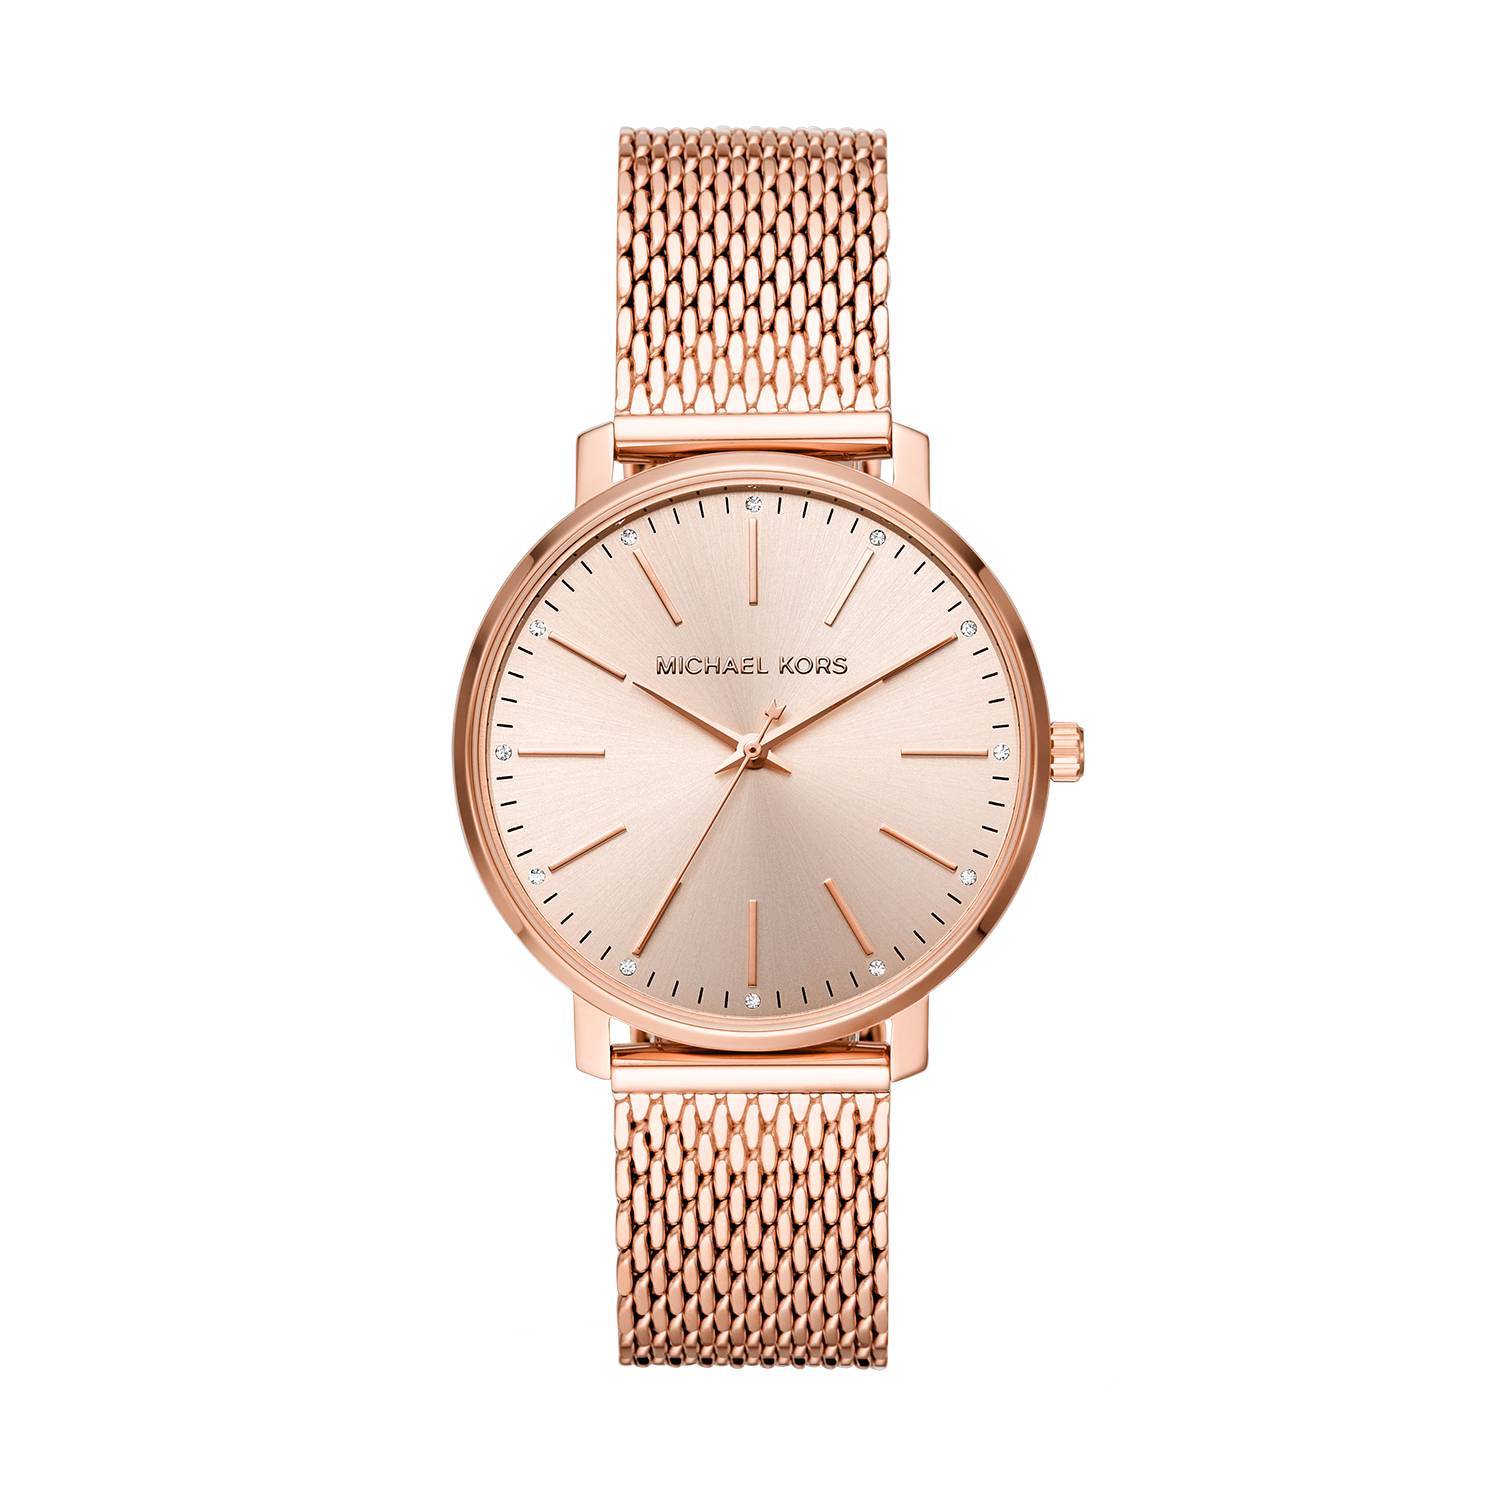 Reloj analógico mujer rosa analógico con cinta oro S.Oliver